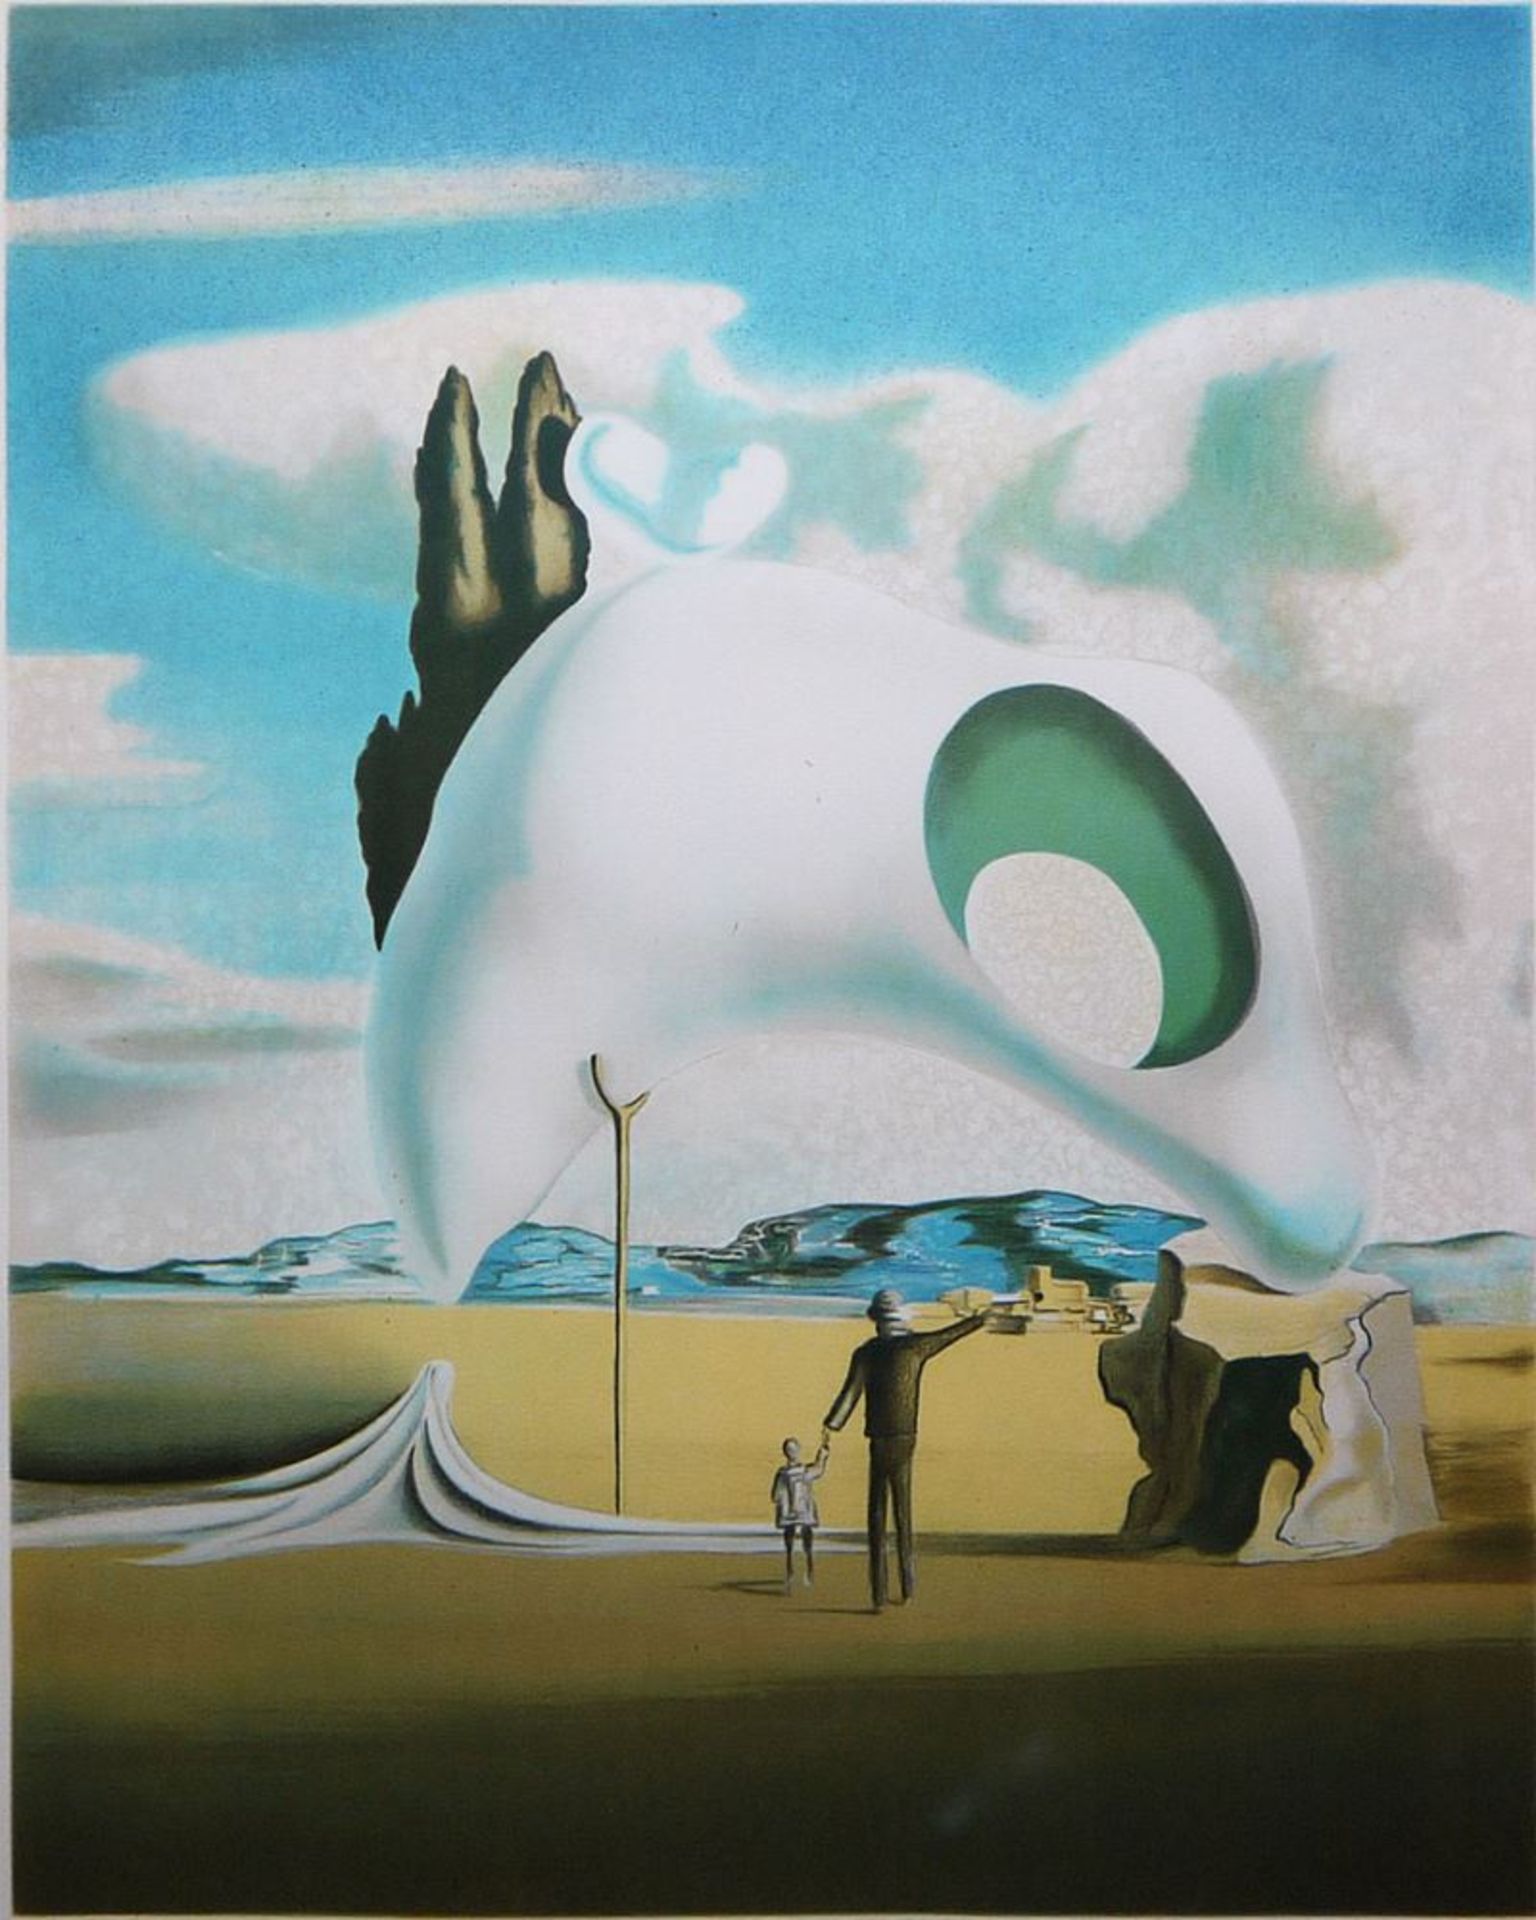 Salvador Dalí, "Atavistische Ruinen", signierte Farblithographie von 1983, im Goldrahmen - Image 3 of 3